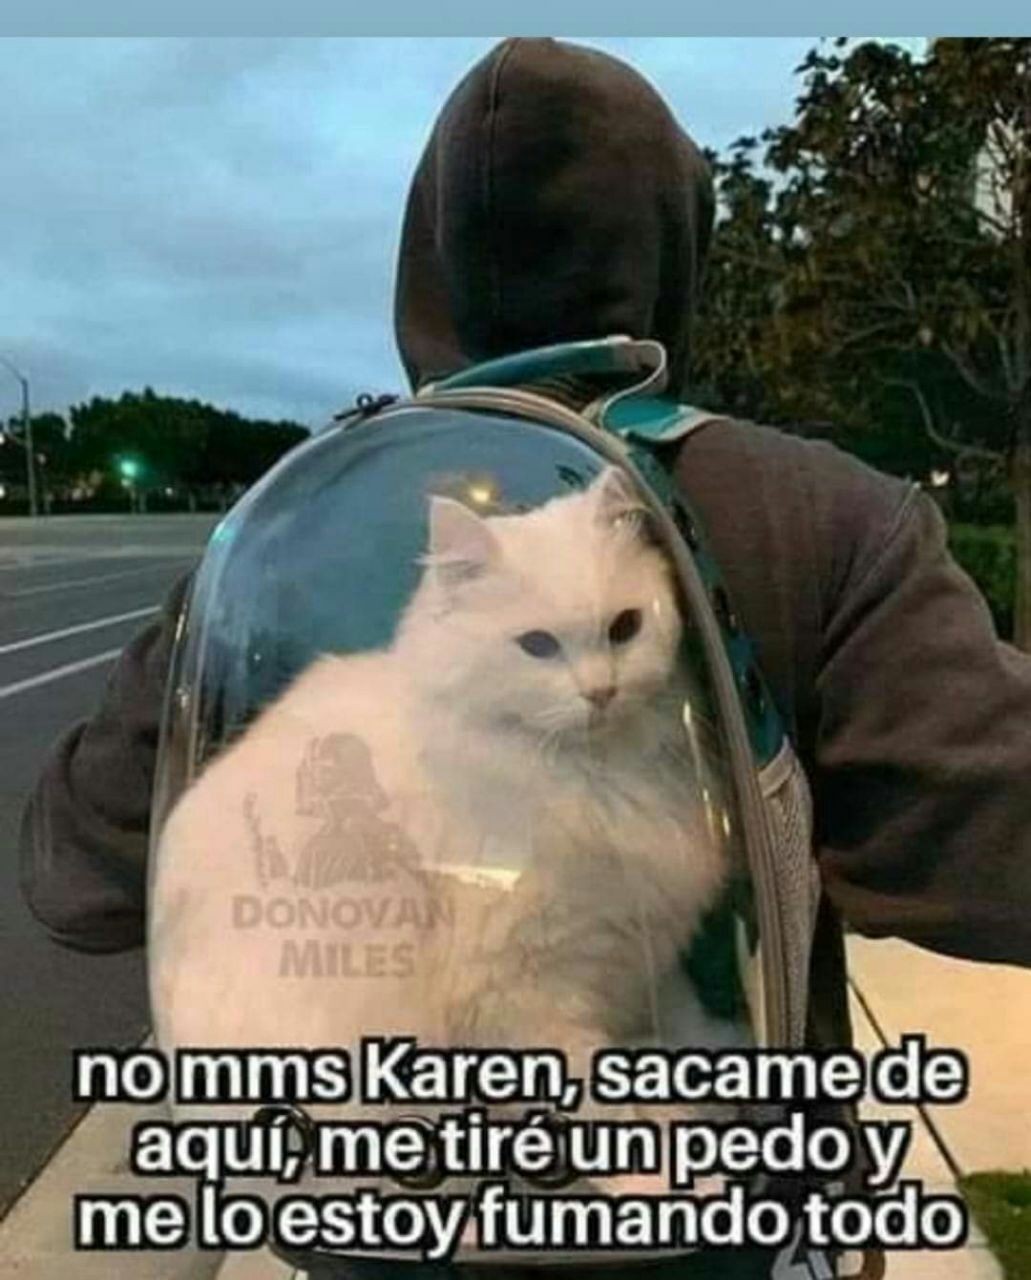 La Karen es mala - meme